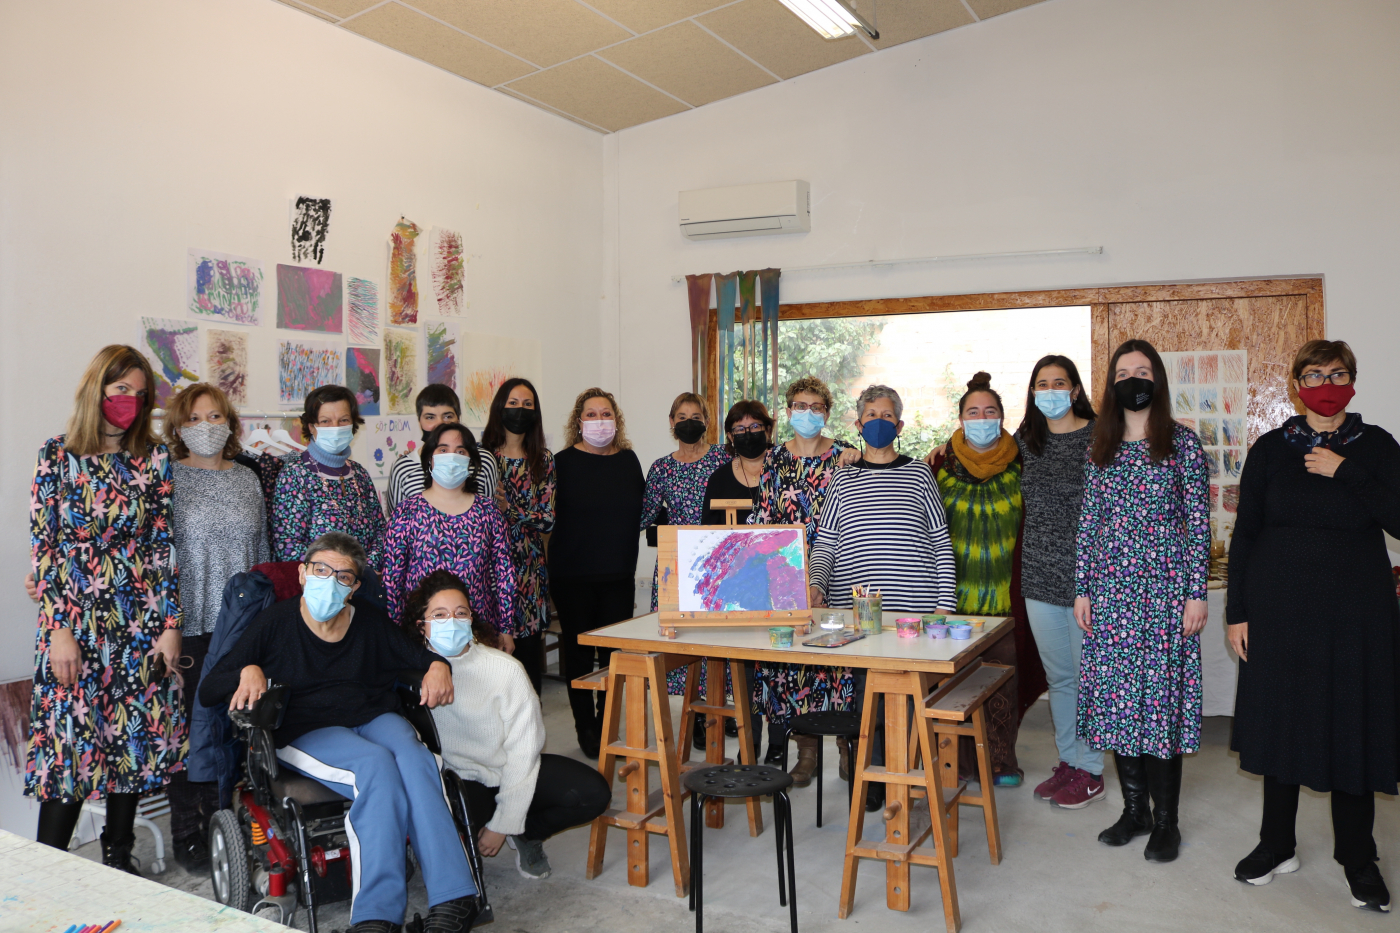 El Centre d'Art Singular de Guissona gestionat pel Grup Alba reuneix a diferents dones artistes per reivindicar la seva visibilització en el món de l'art coincidint amb la setmana del 8 de març.